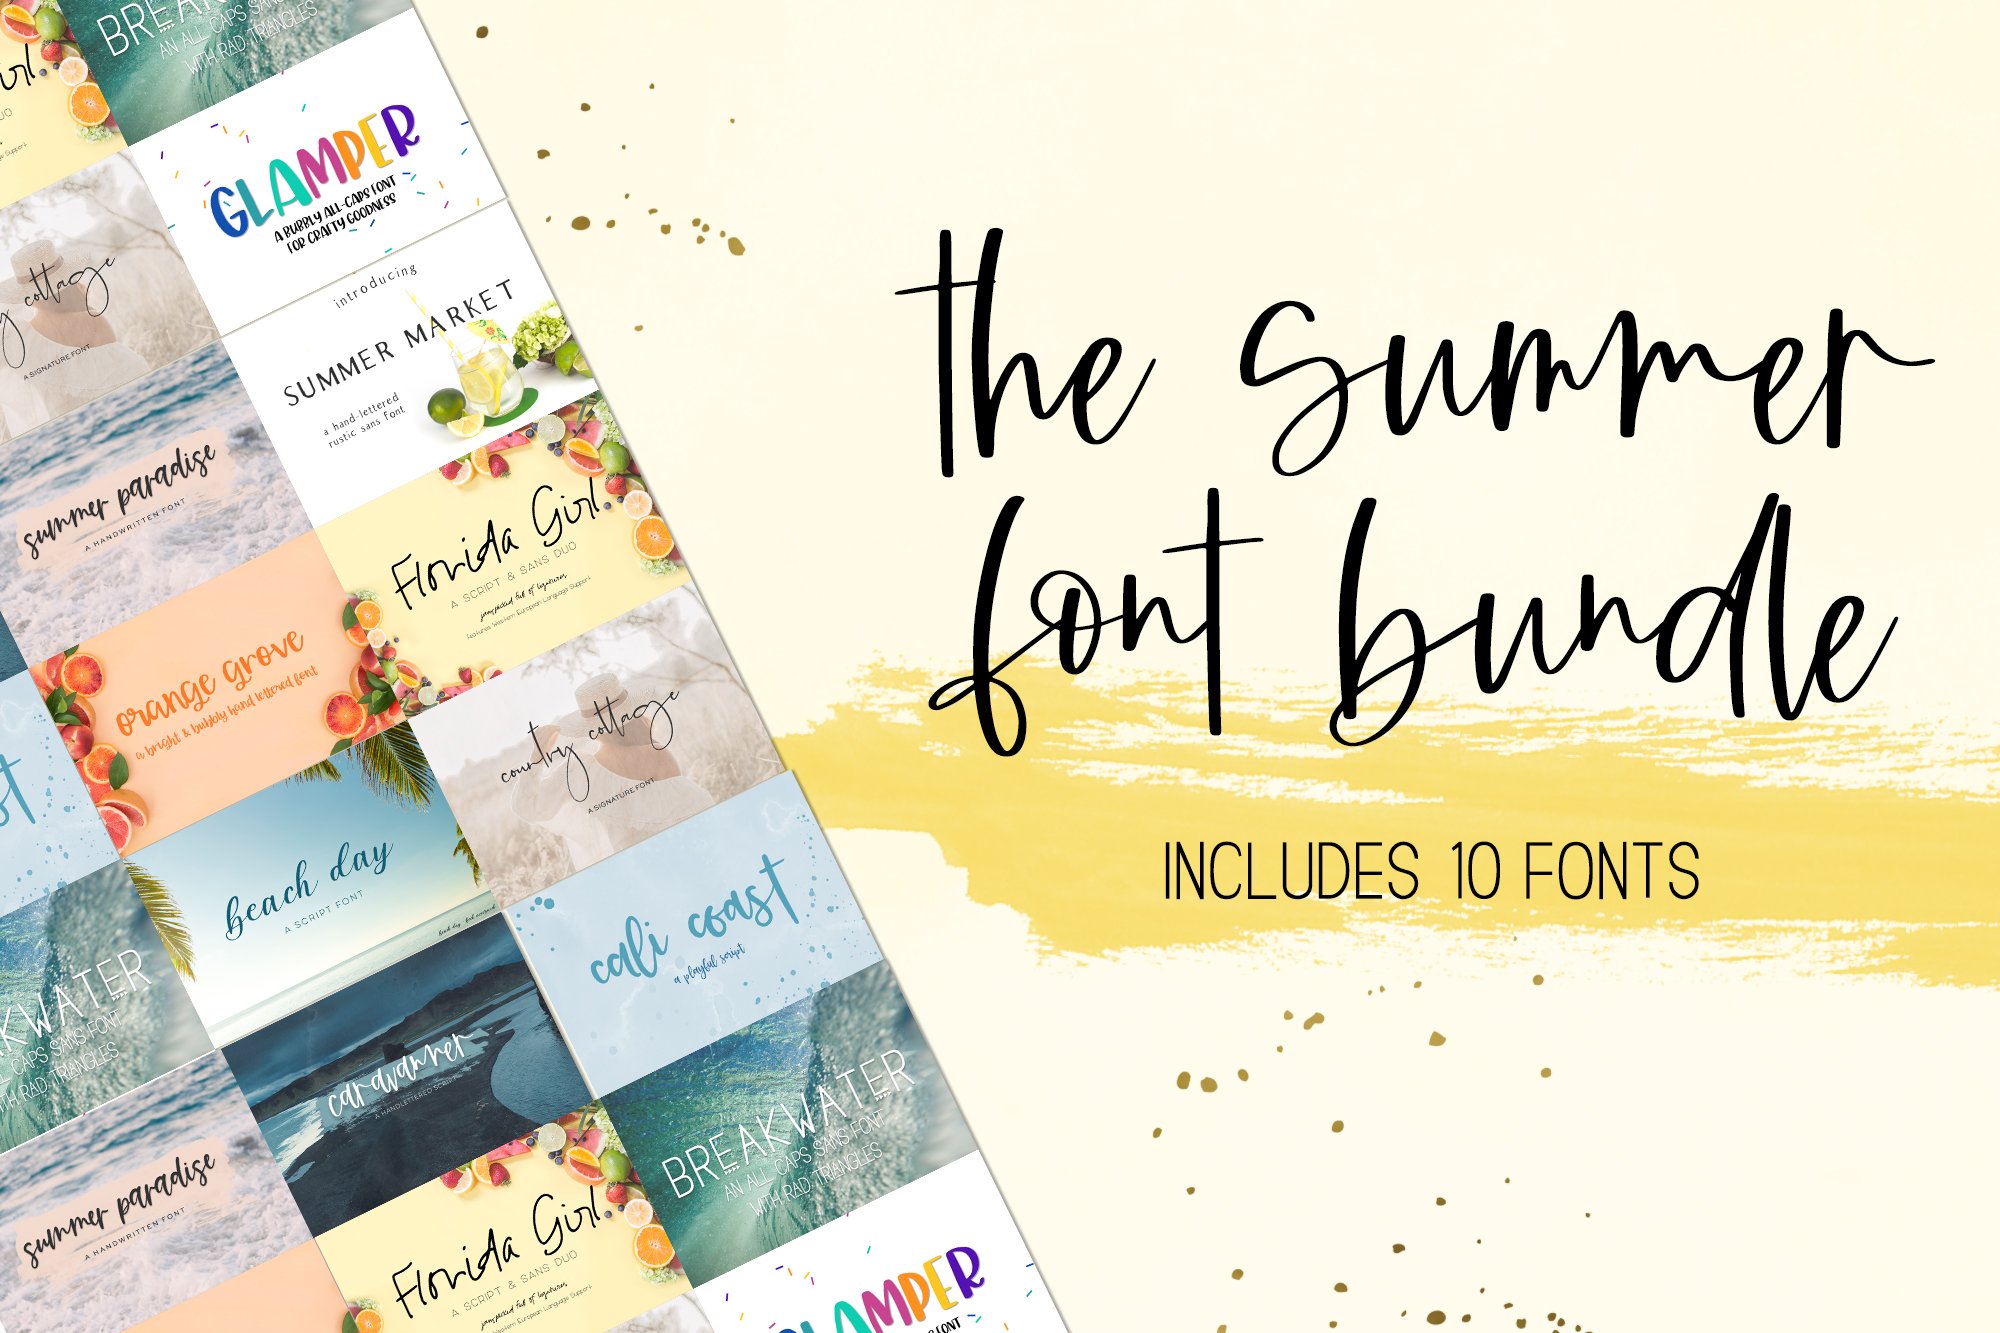 Summer Font Bundle cover image.